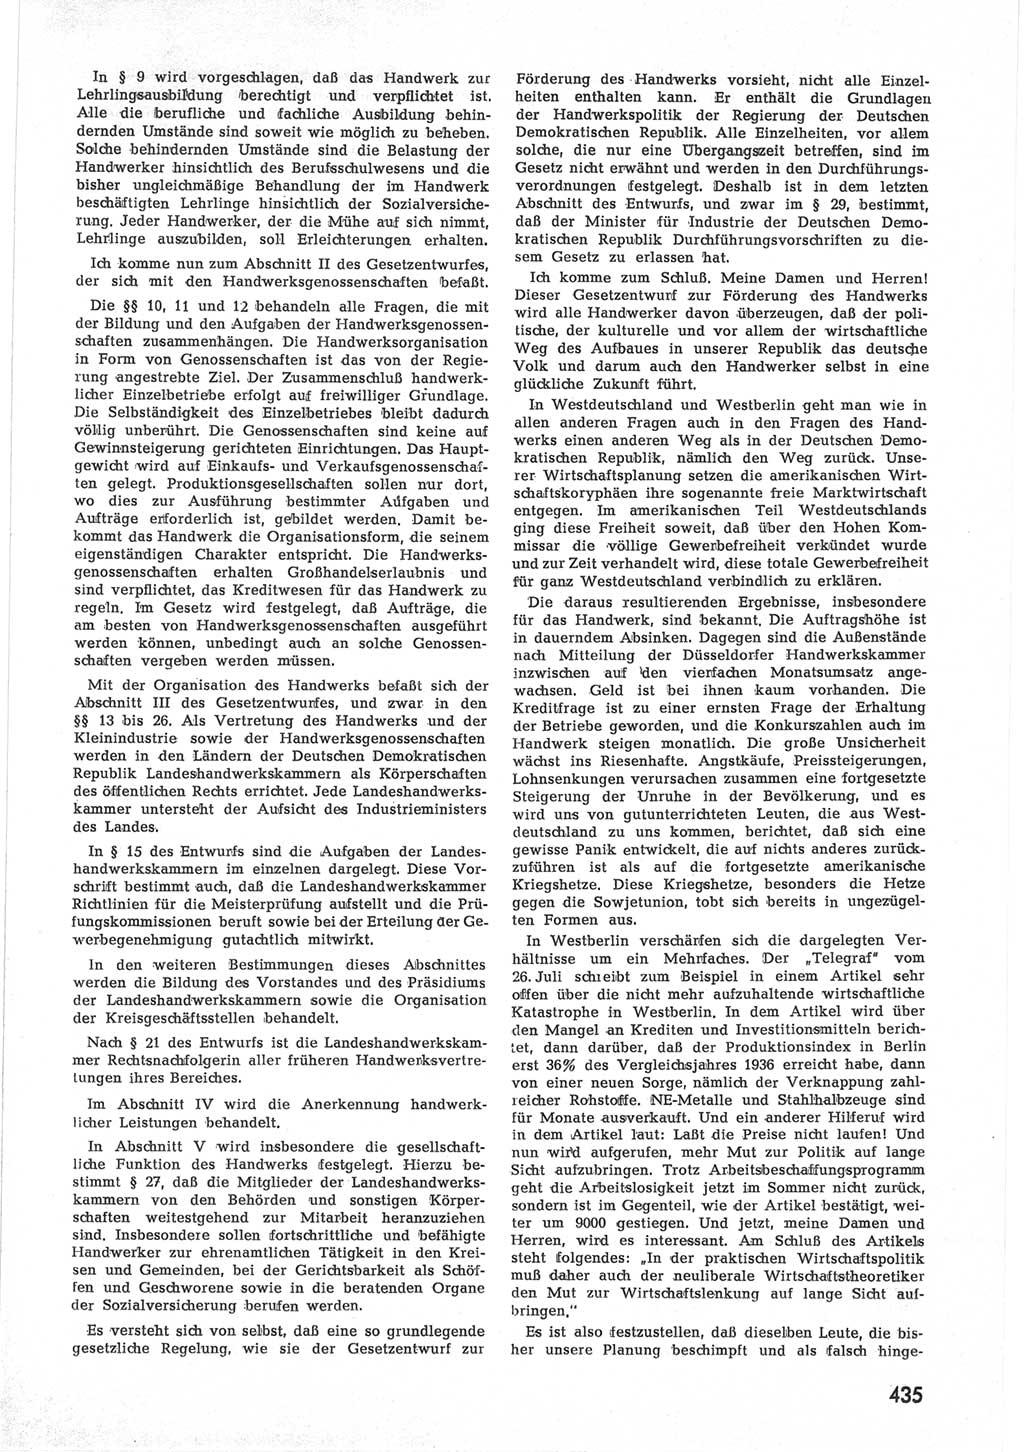 Provisorische Volkskammer (VK) der Deutschen Demokratischen Republik (DDR) 1949-1950, Dokument 453 (Prov. VK DDR 1949-1950, Dok. 453)